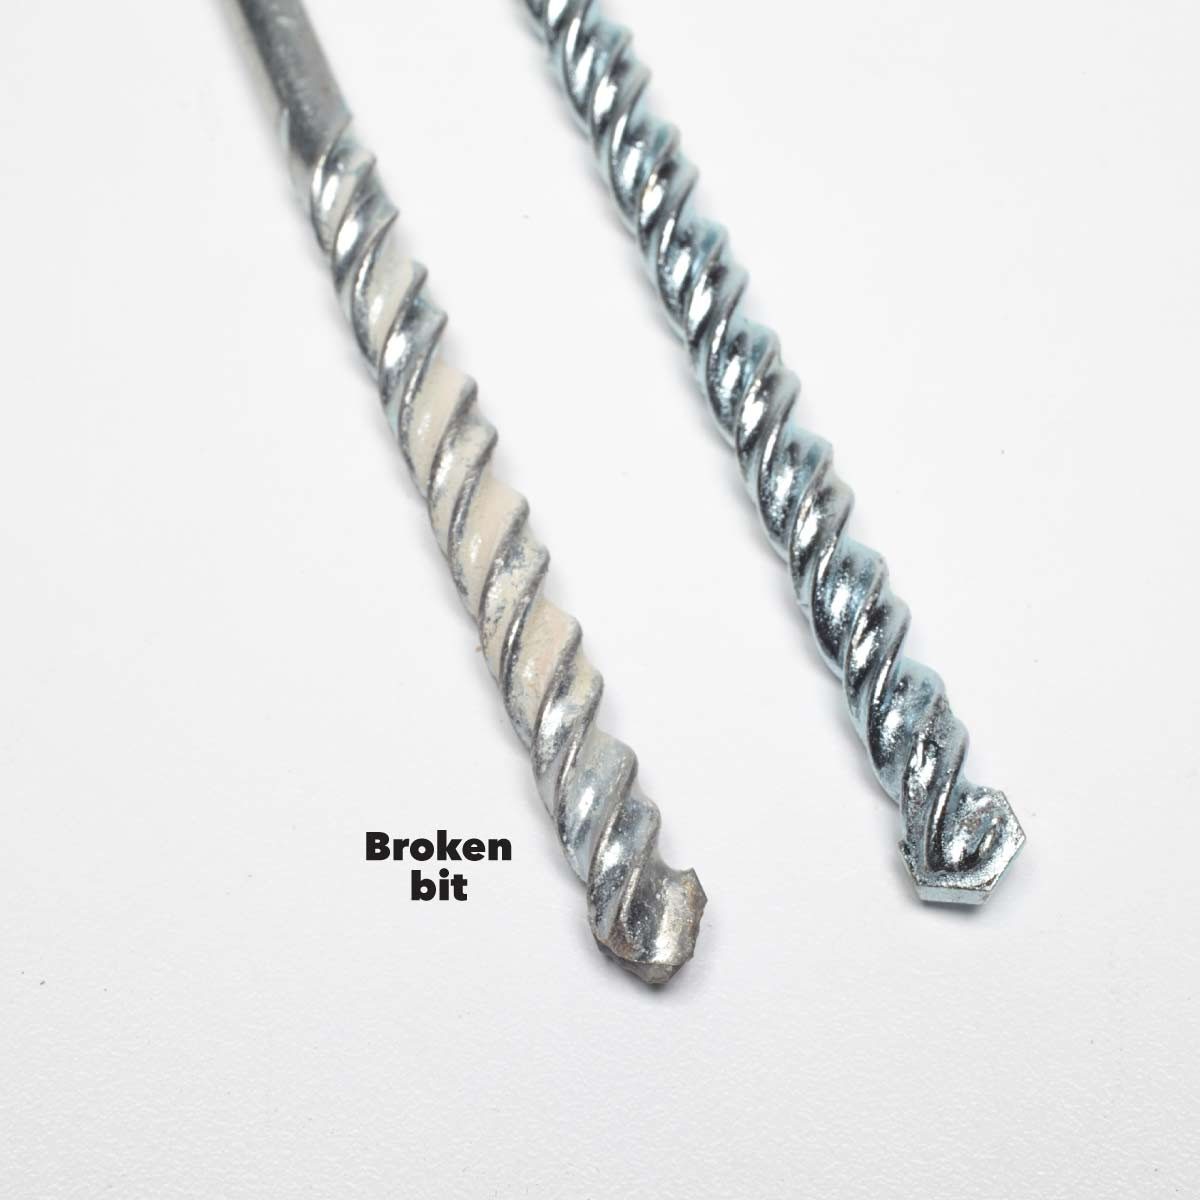 rotary vs hammer drills broken bits